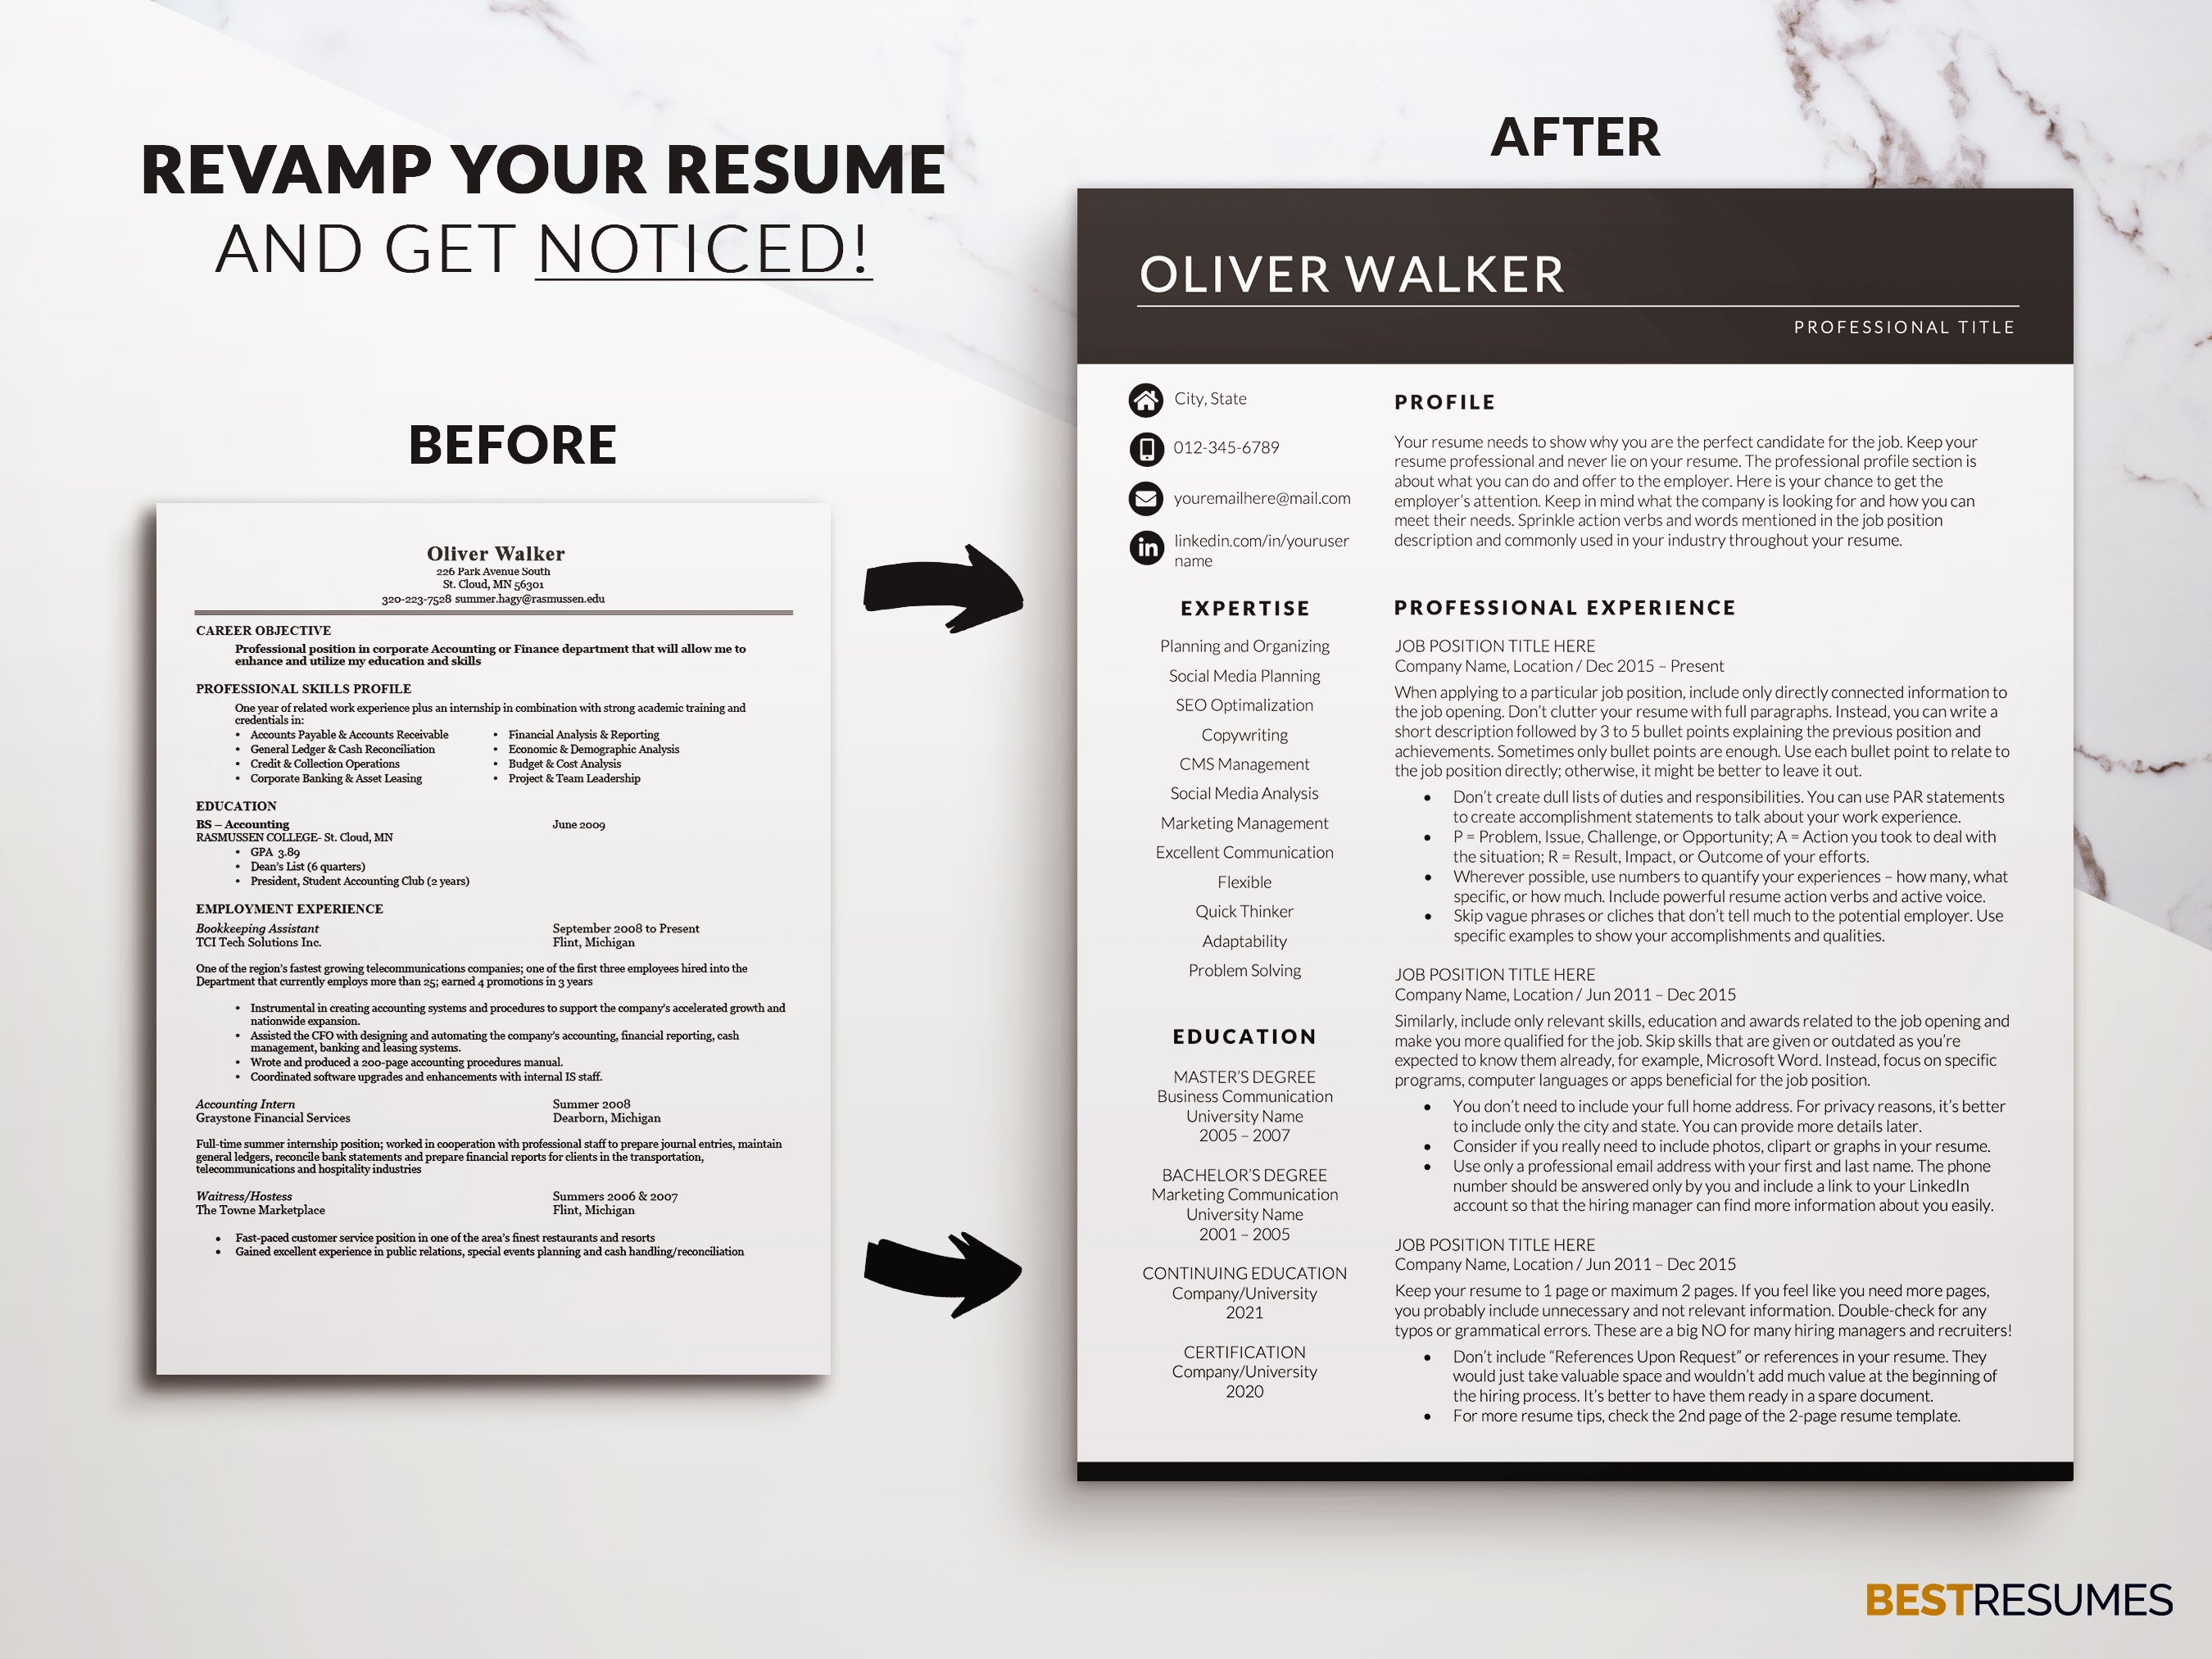 marketing manager cv resume template revamp your resume oliver walker.jpg 450